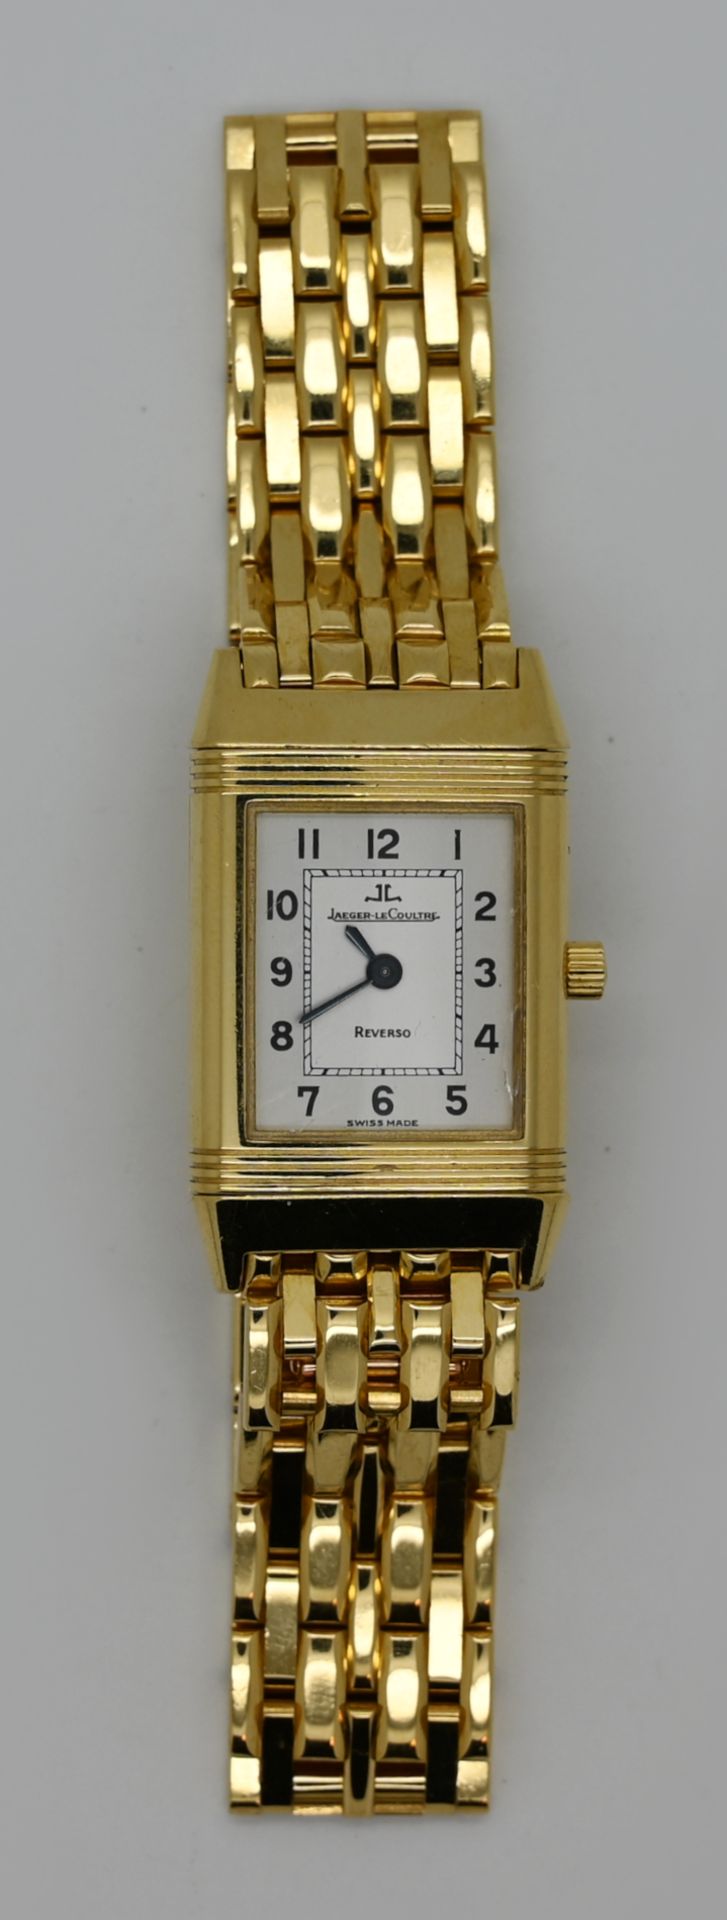 1 Damenarmbanduhr JAEGER LECOULTRE Reverso GG 18ct., mit Faltschließe, Handaufzug (Uhr läuft an), - Bild 2 aus 3